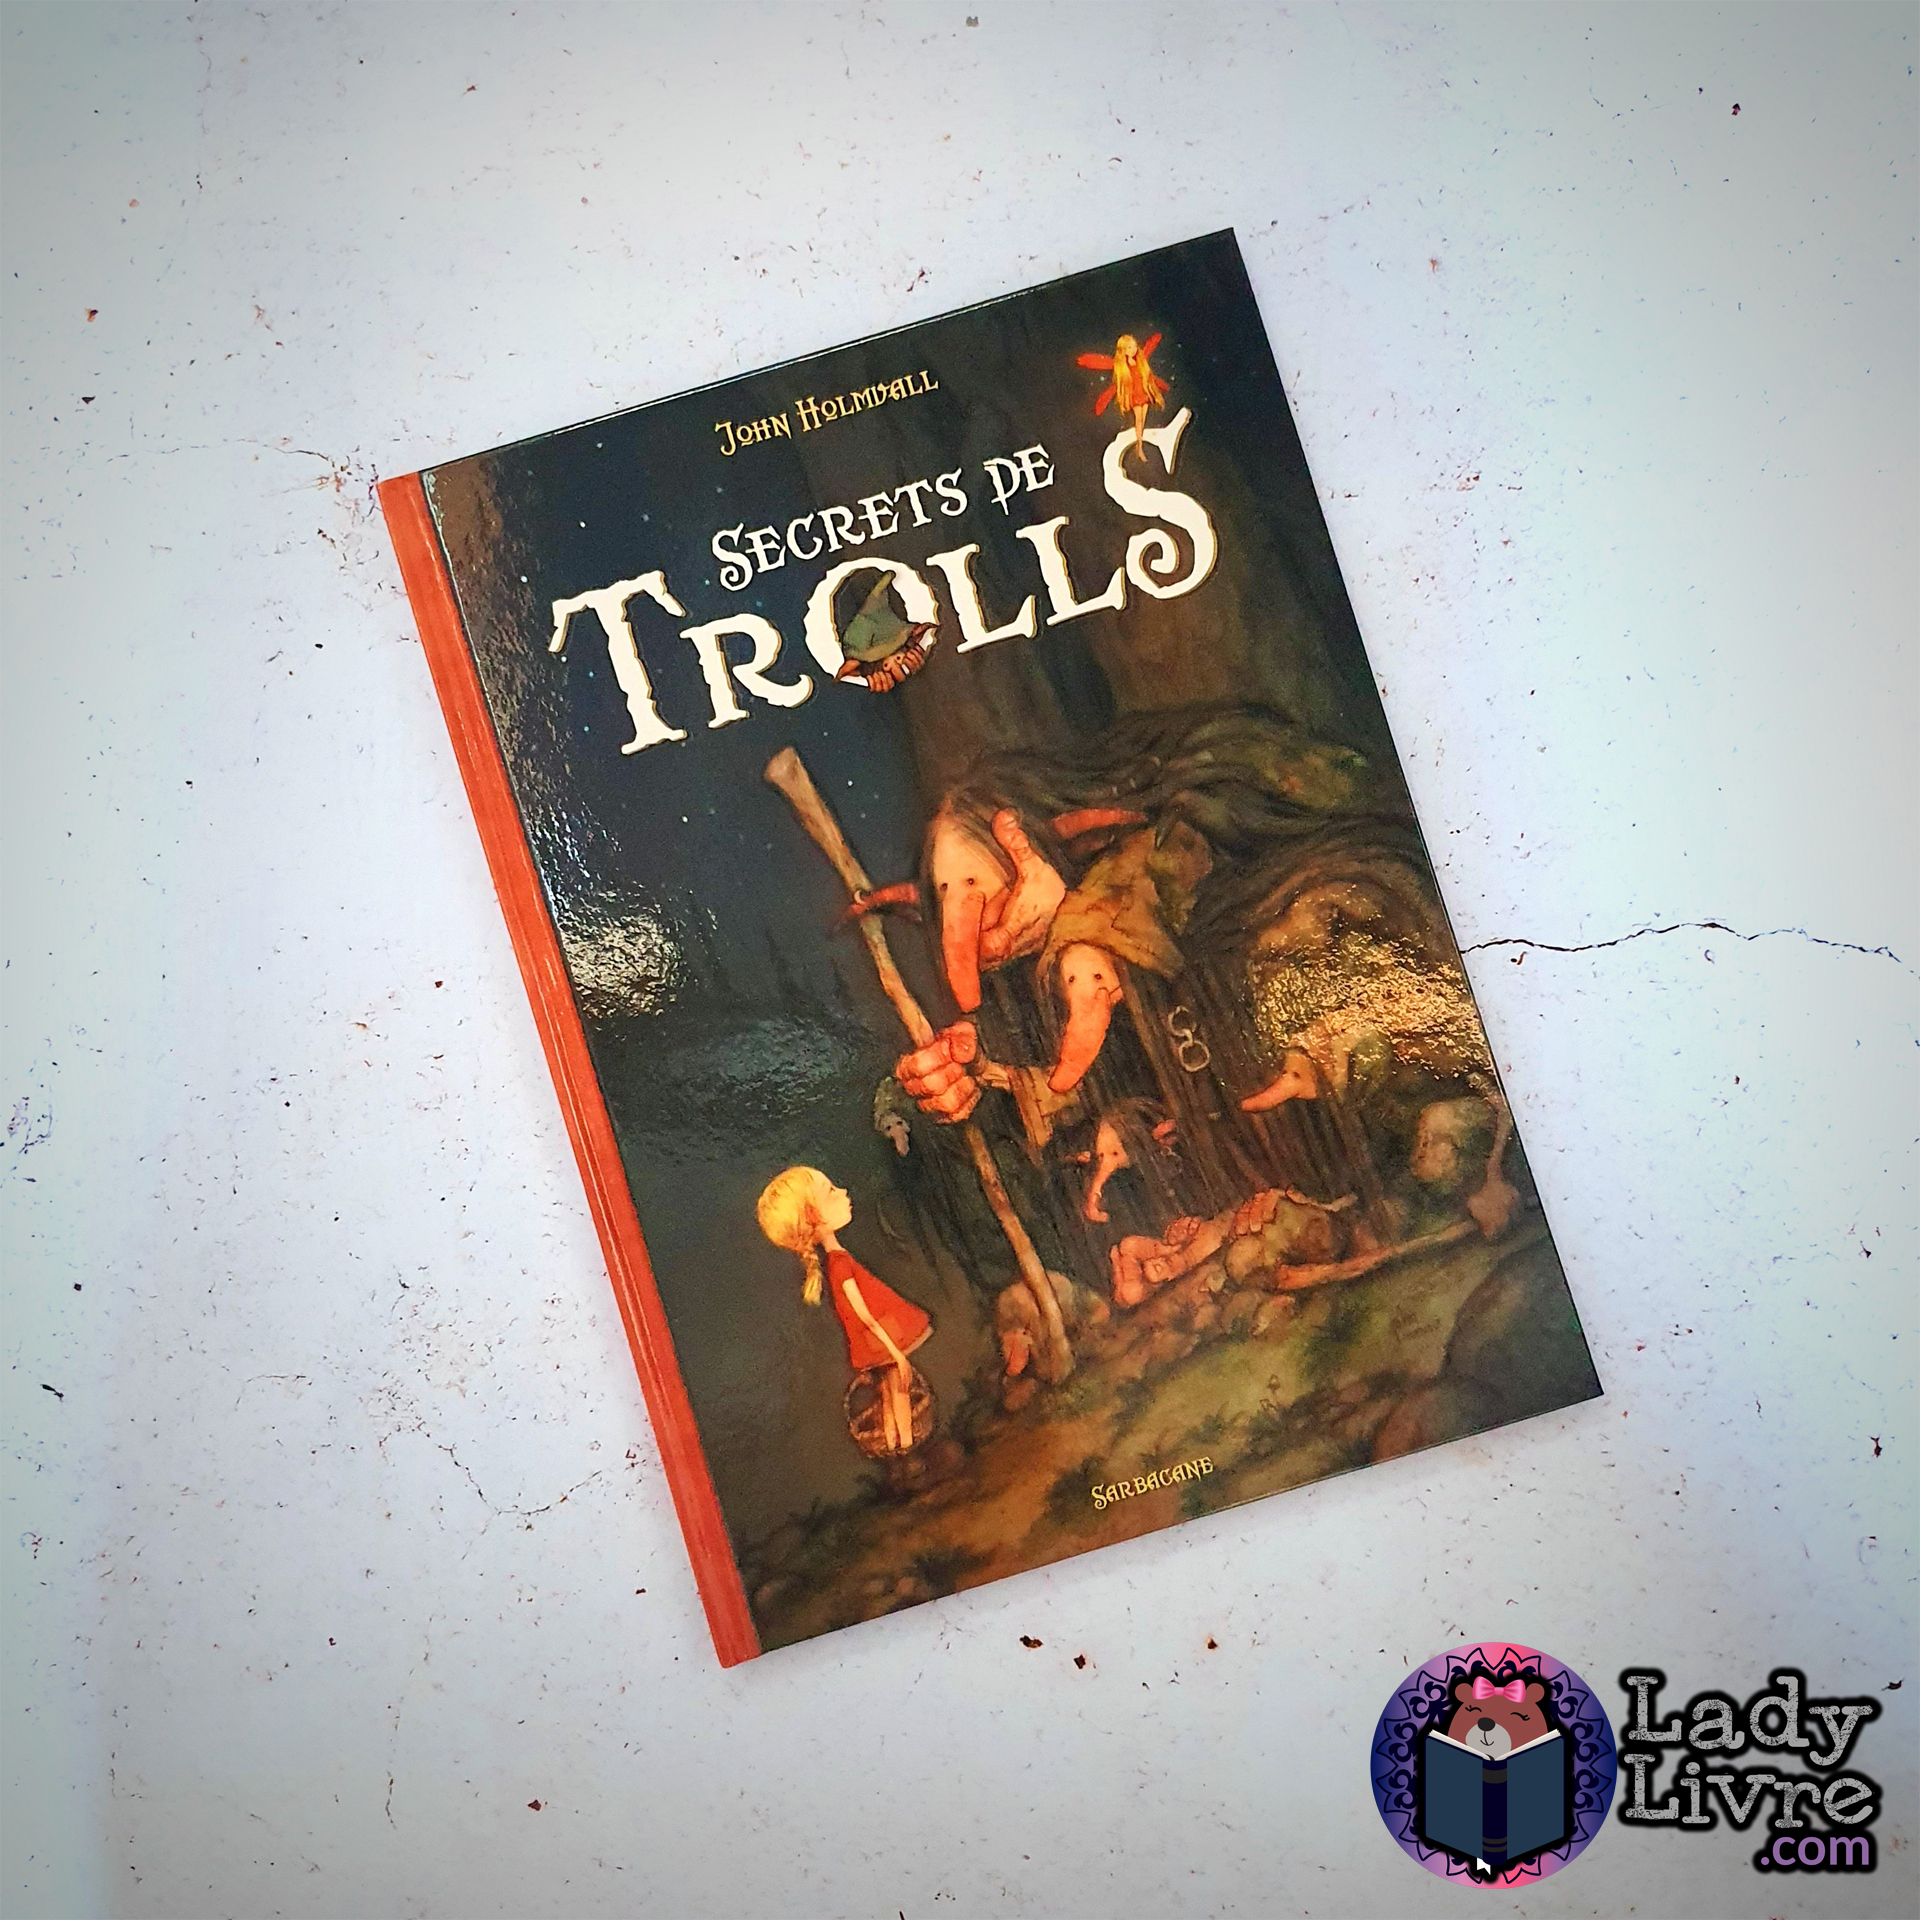 Secrets de trolls - John Holmvall